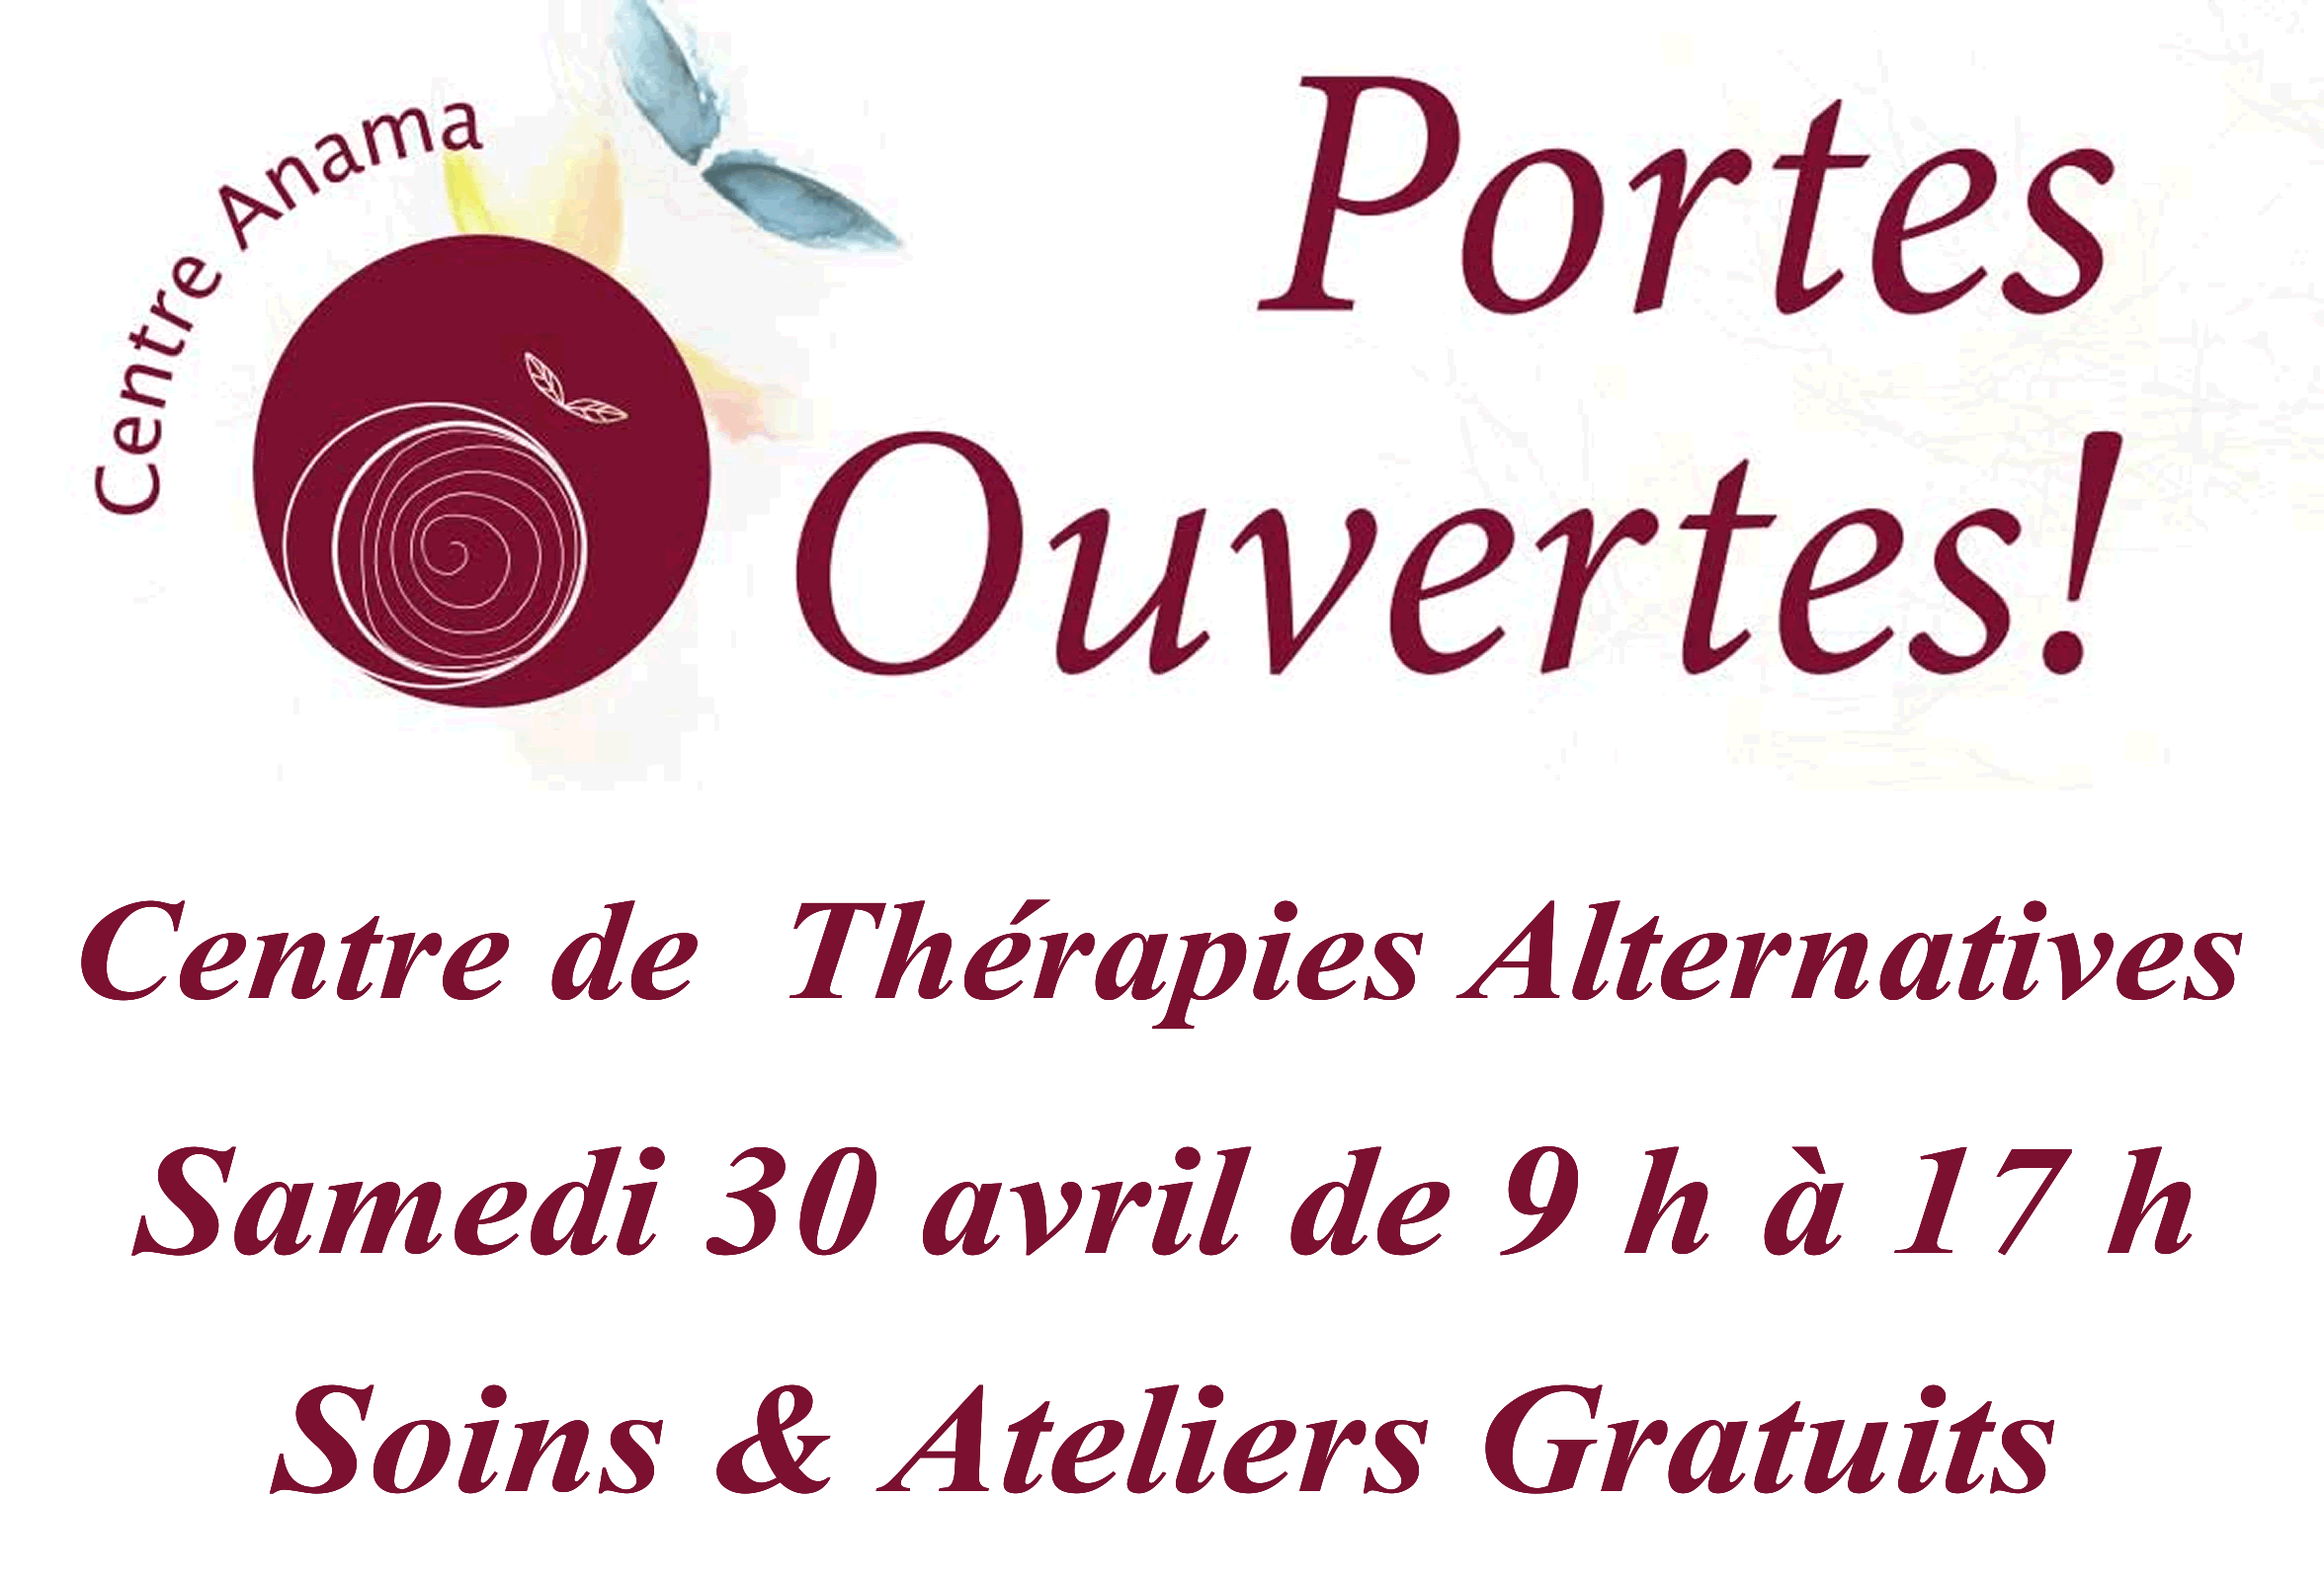 Soins gratuits et Ateliers à l'occasion des Portes Ouvertes du Centre de thérapies alternatives le 30 avril 2016 à Lausanne